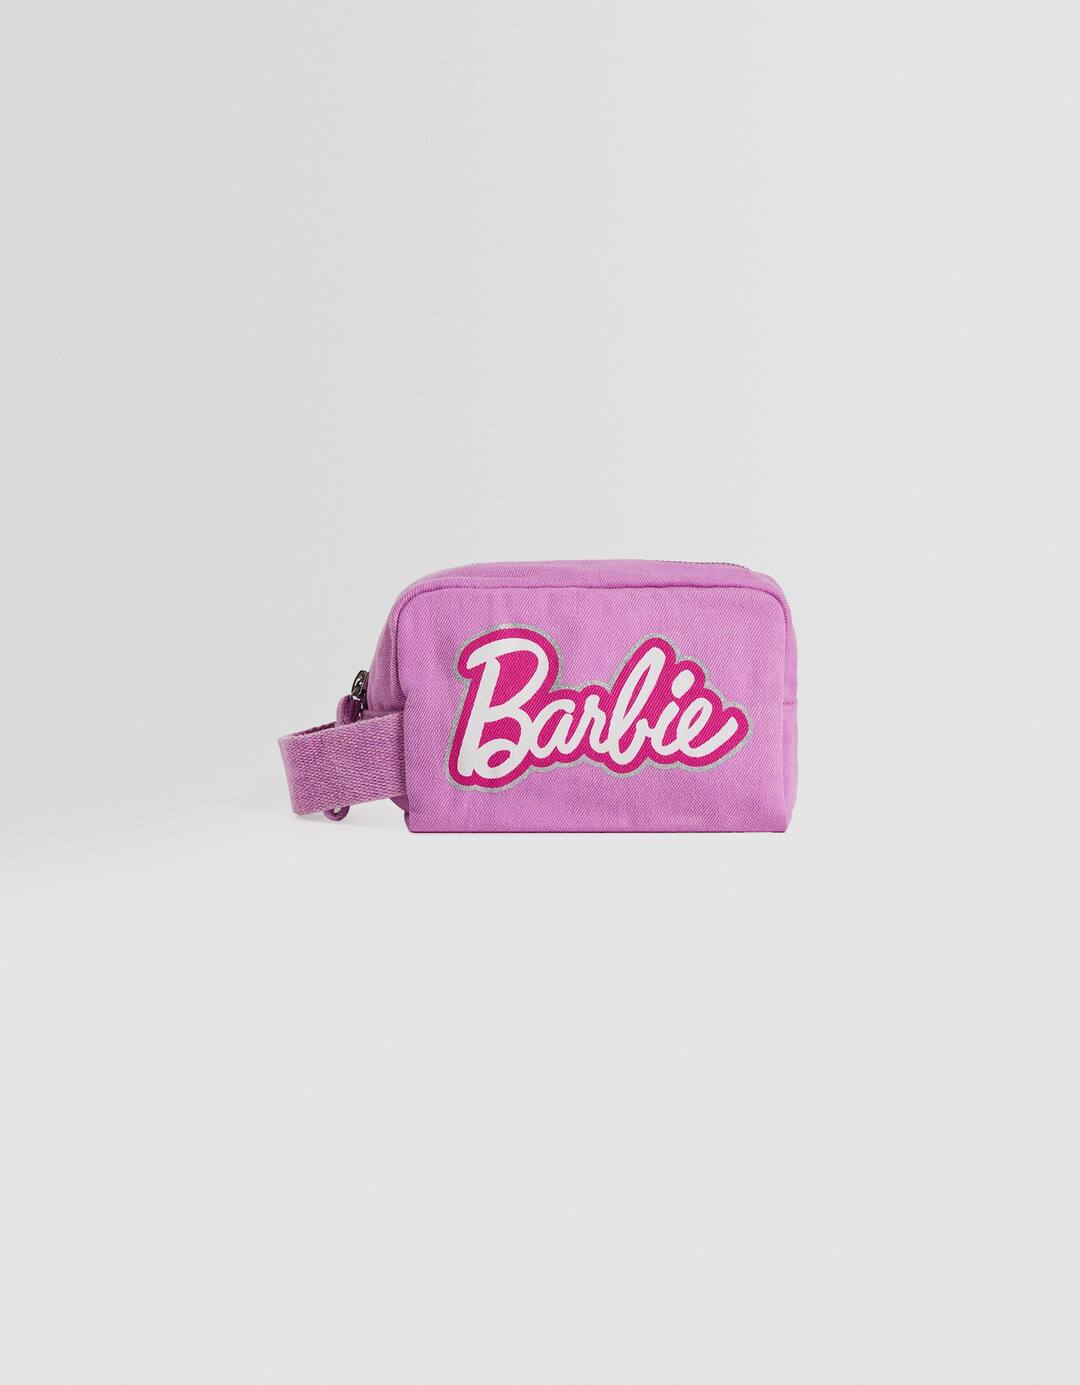 Barbie toiletry bag